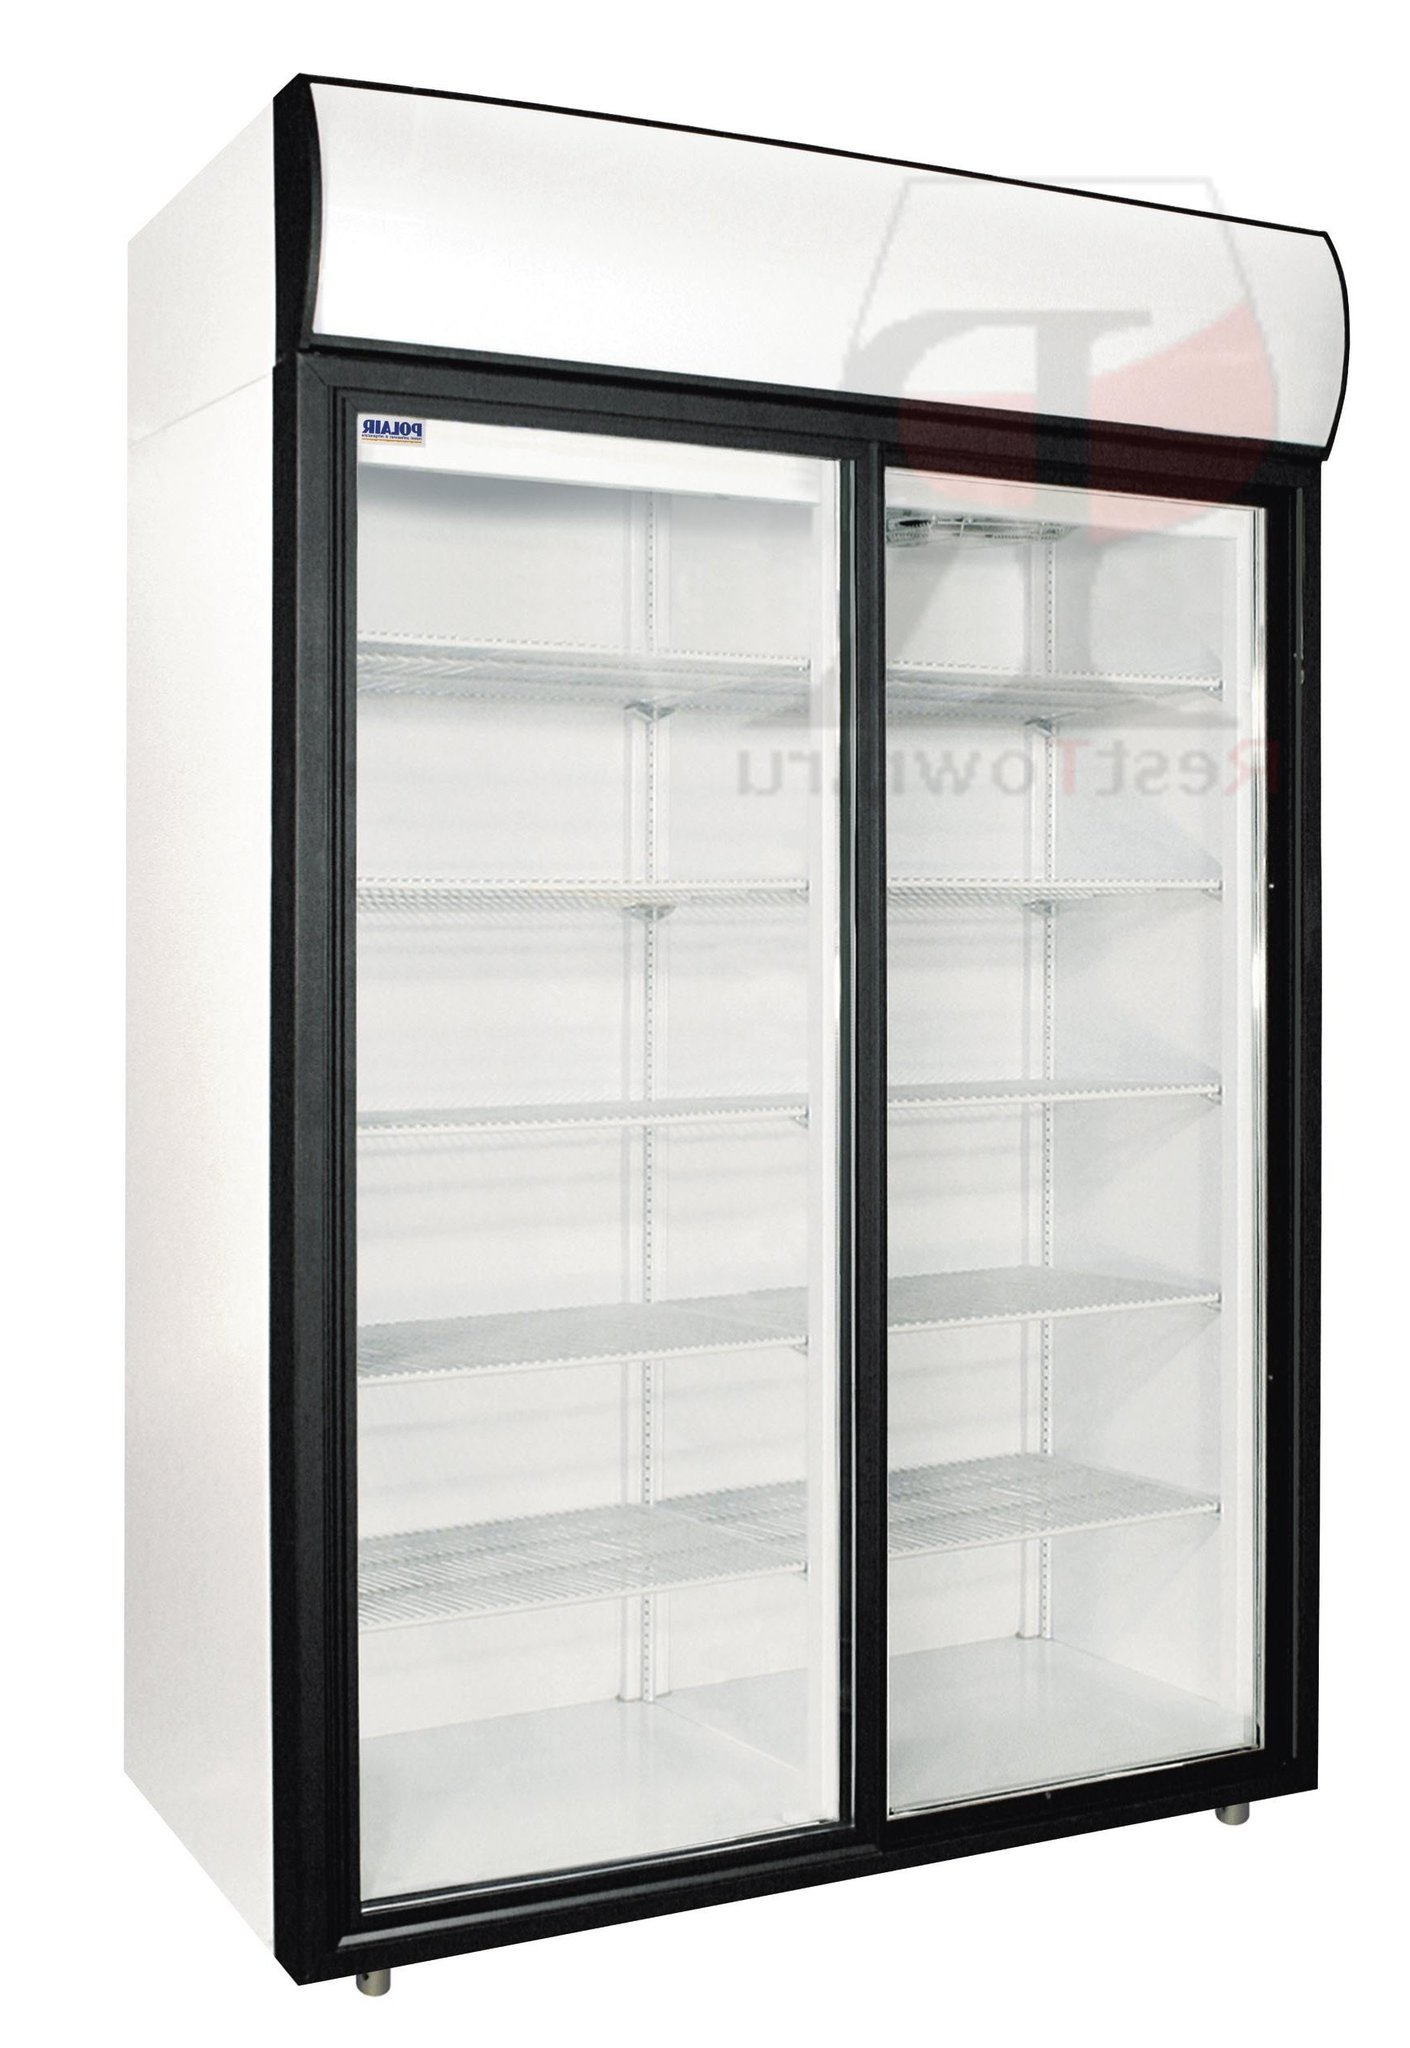 Холодильный шкаф polair dm 107 s шх 0 7 дс